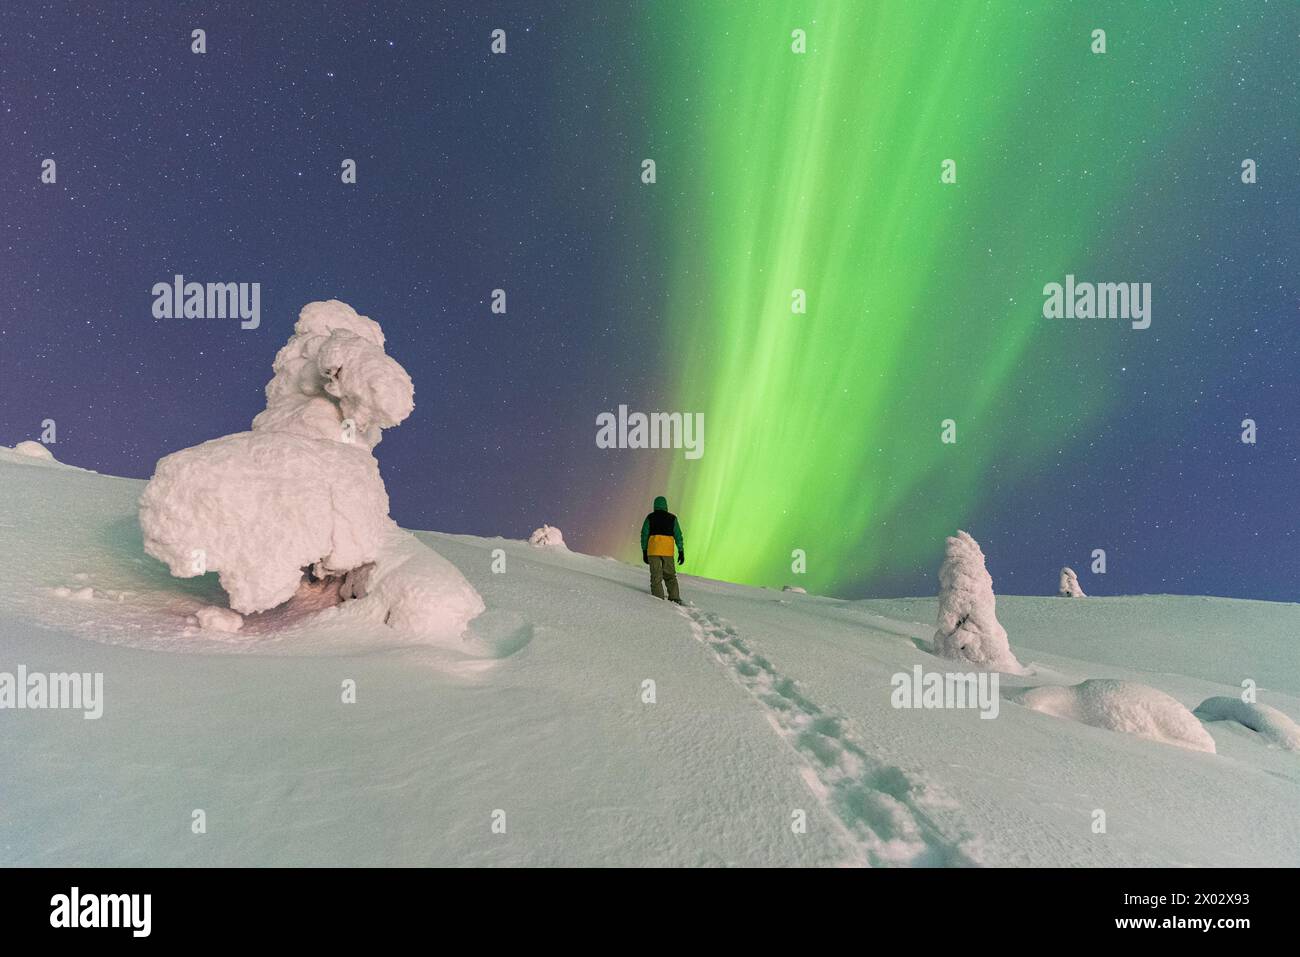 Vista notturna di un uomo che sale su una collina con alberi ricoperti di neve e ghiaccio, ammirando il verde dell'aurora boreale (Aurora Boreale) Foto Stock